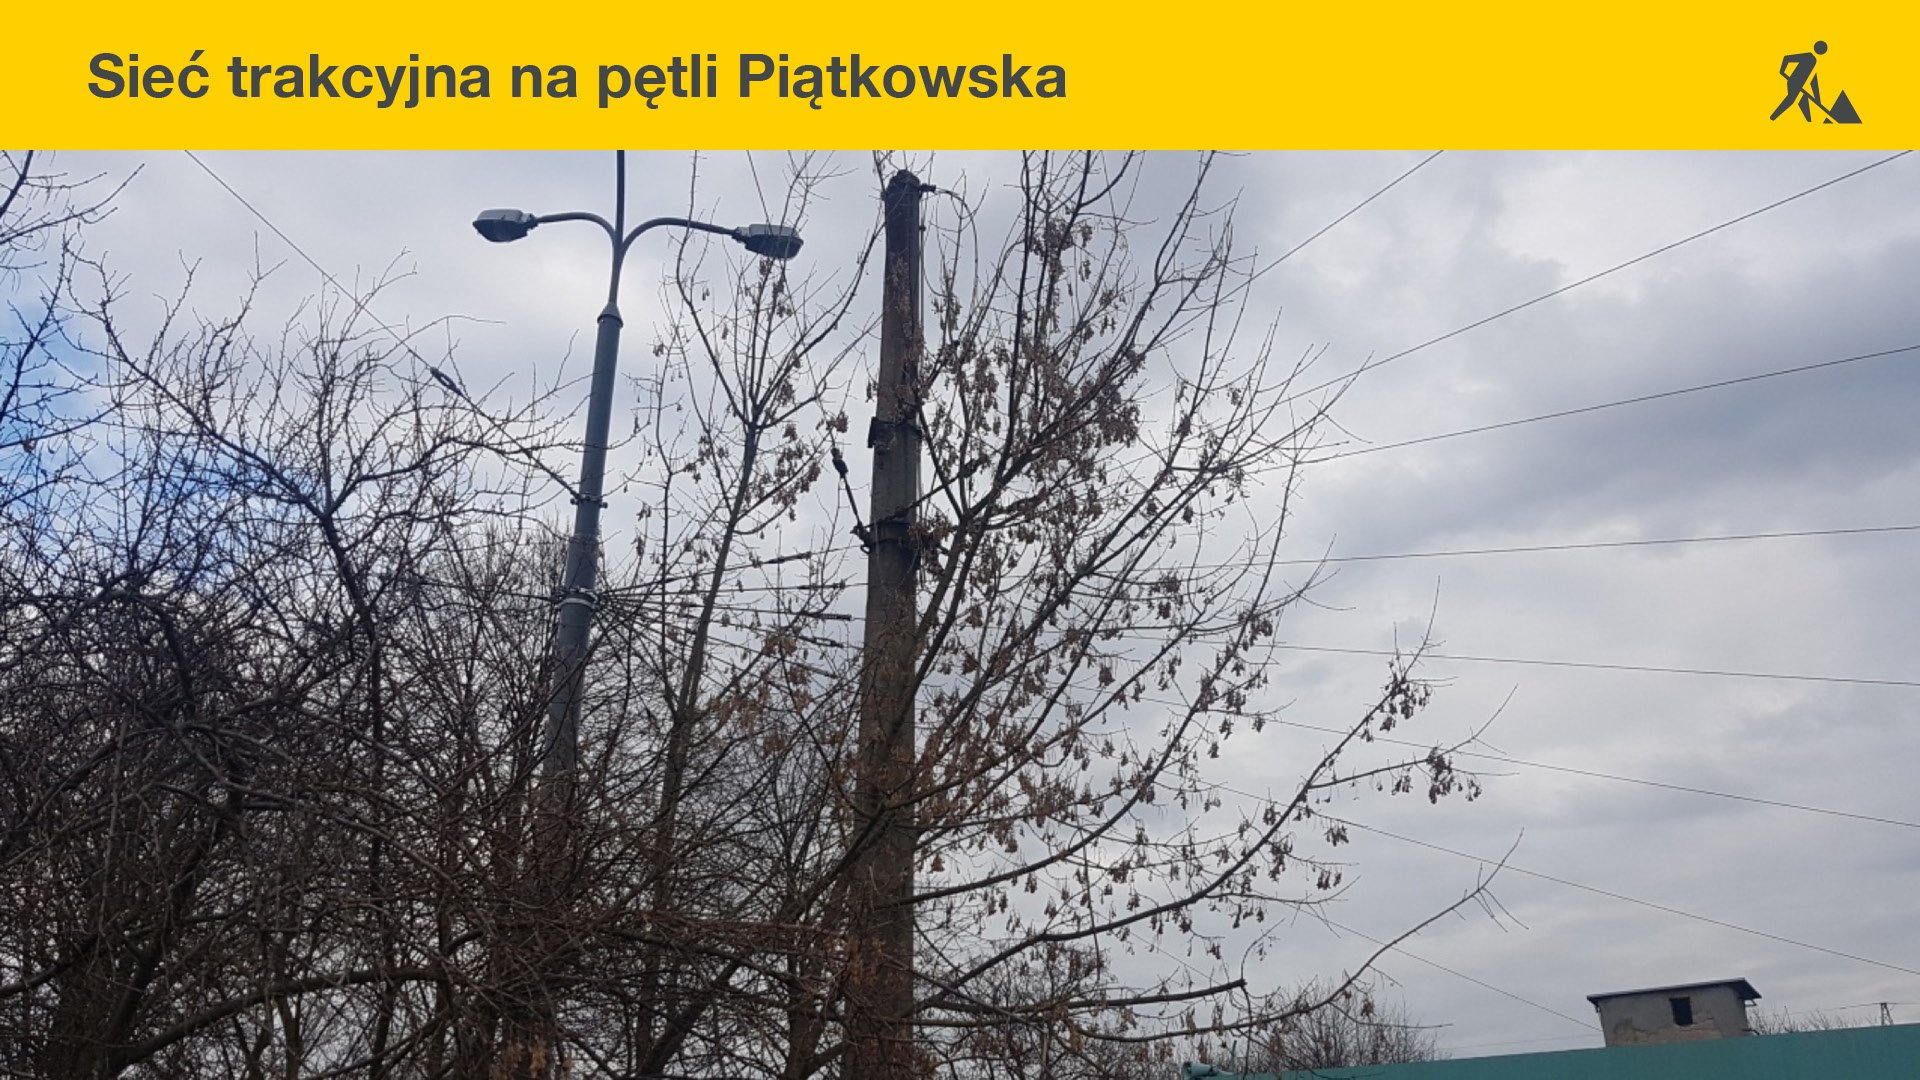 Obecny stan sieci trakcyjnej na pętli Piątkowska